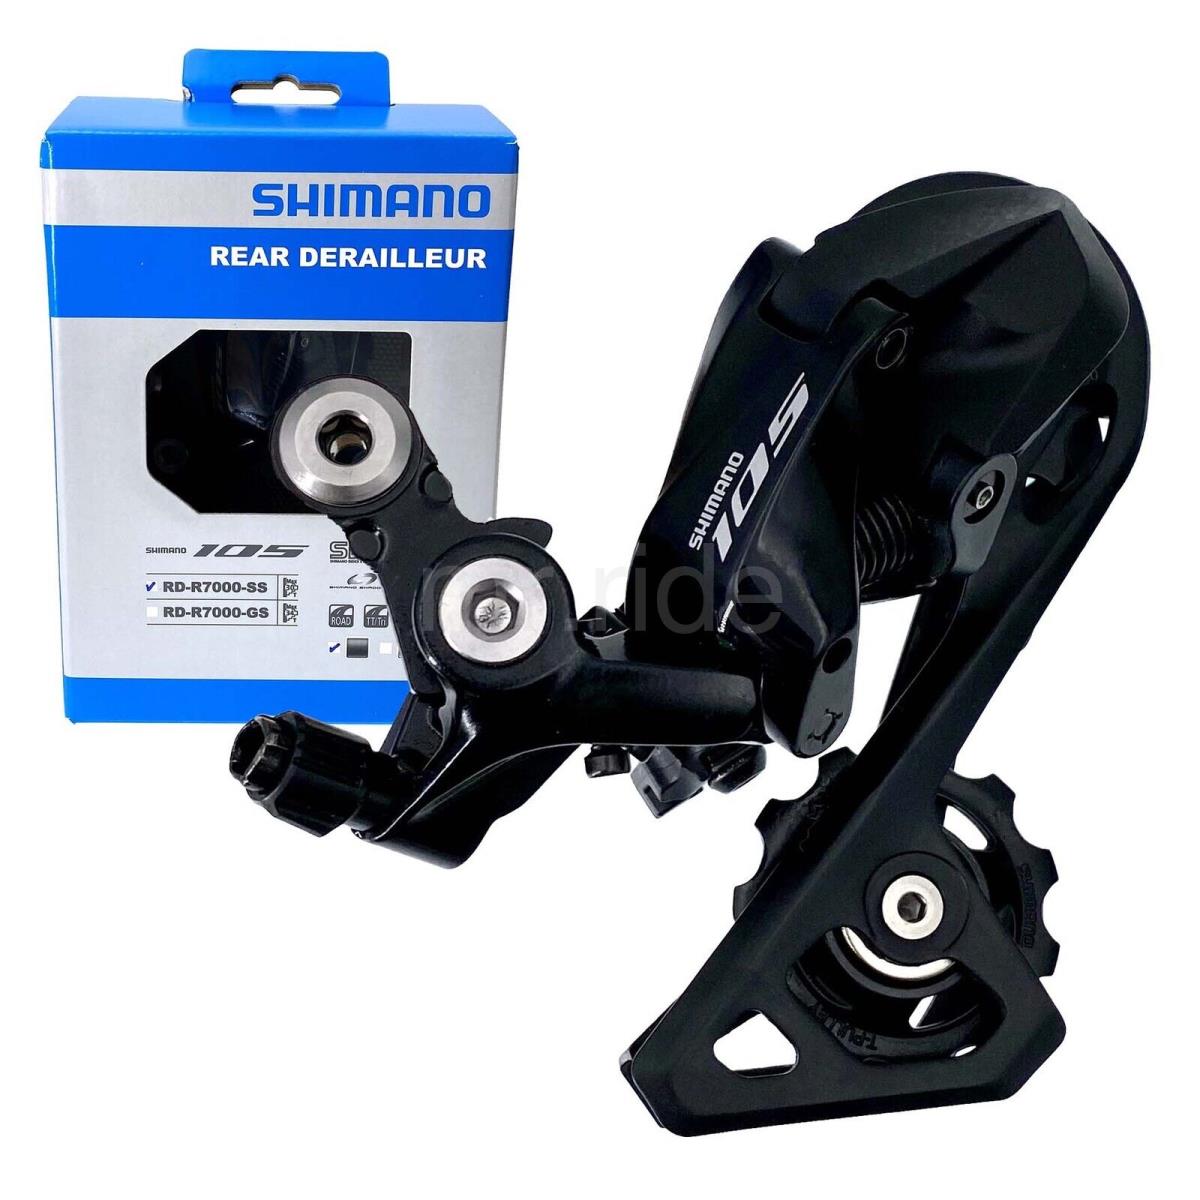 Shimano 105 RD-R7000-SS Rear Derailleur Short Cage 11S Shimano Shadow Black